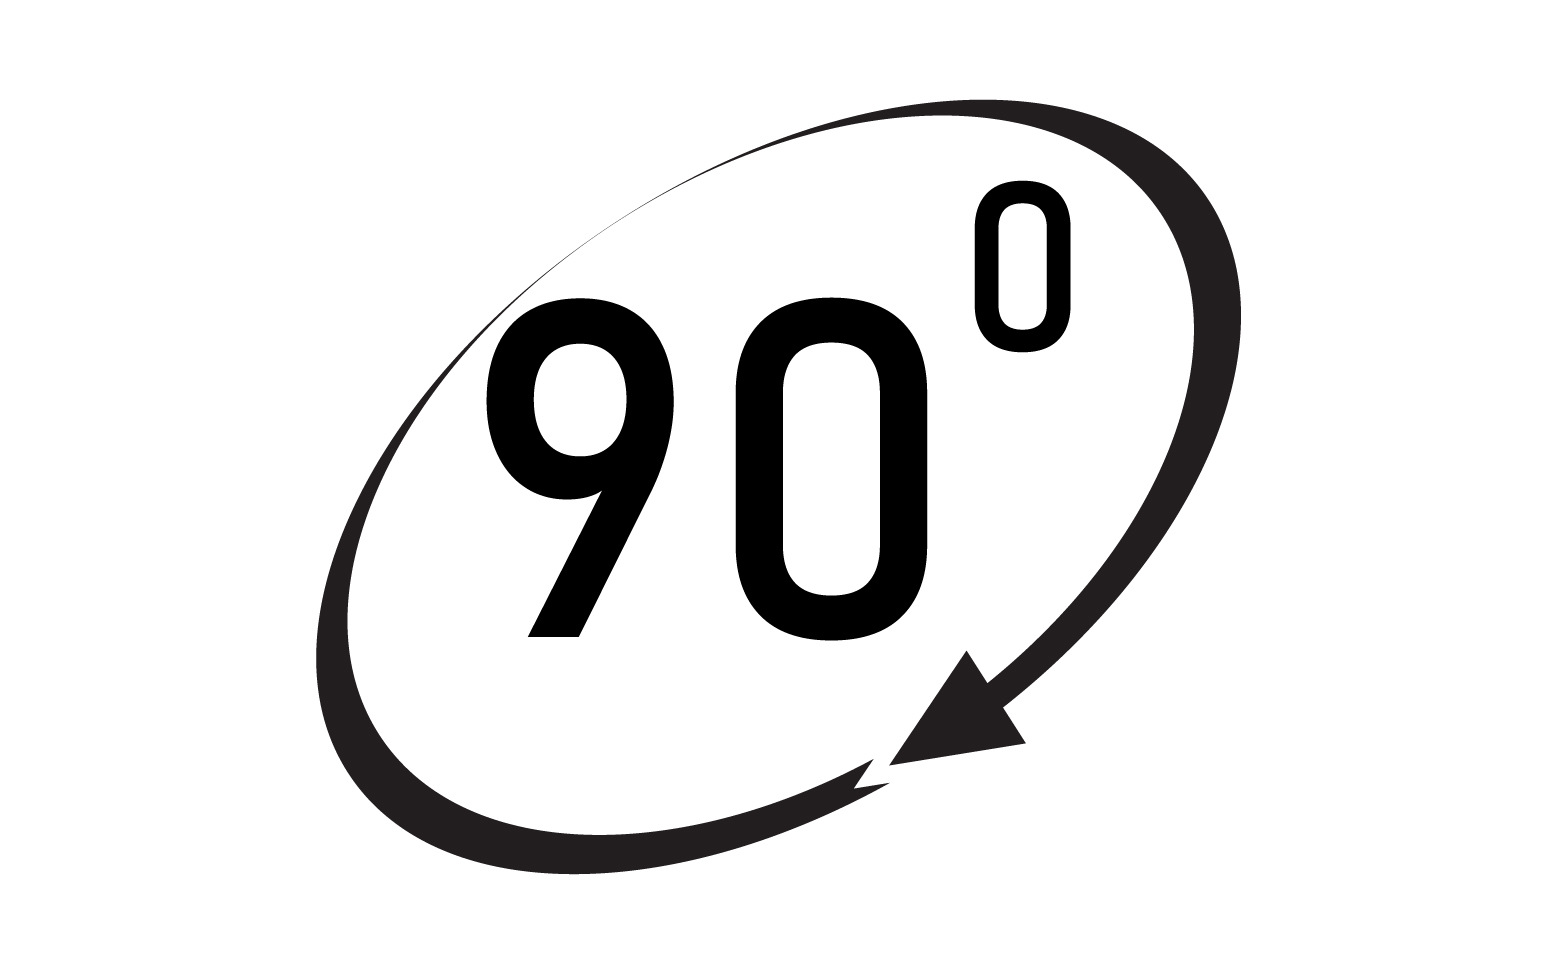 90 degree angle rotation icon symbol logo v51